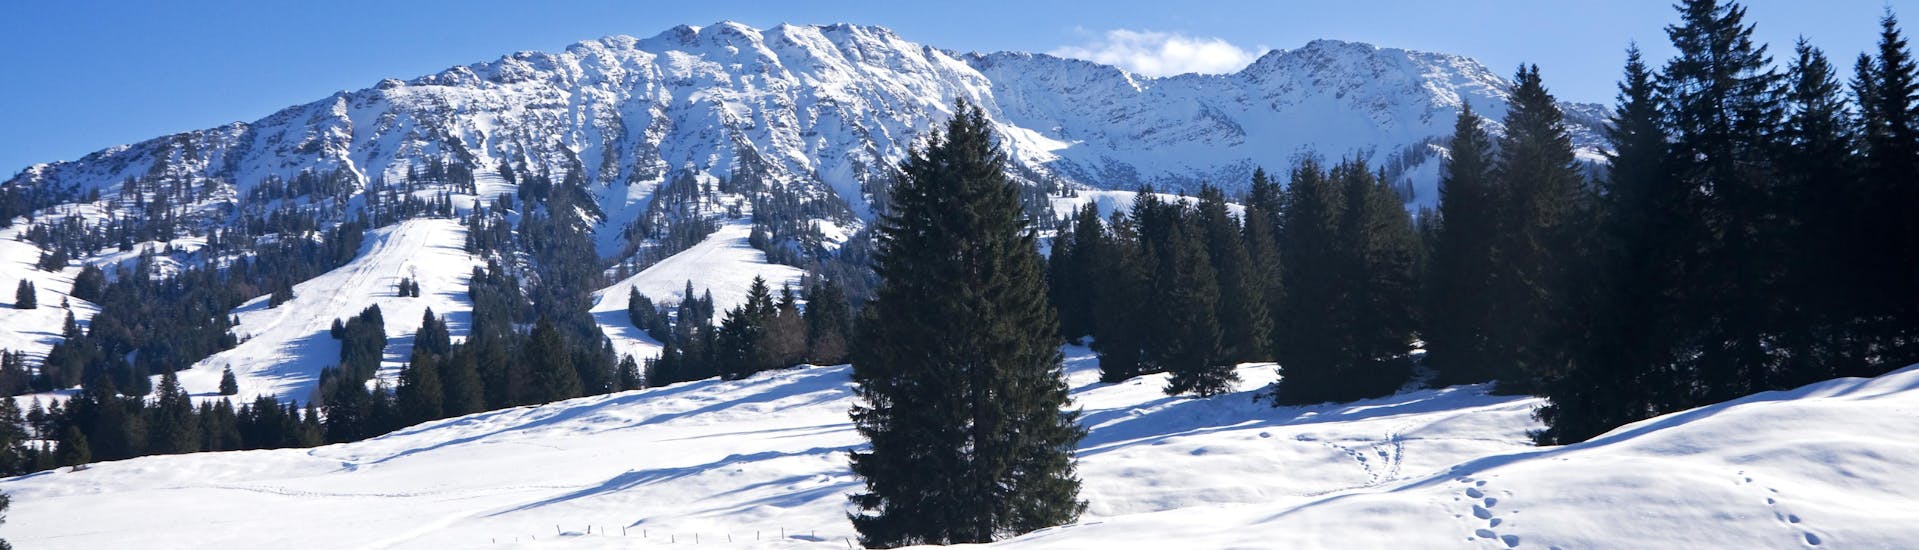 Vue sur un paysage de montagne ensoleillé lors d'un cours de ski avec l'une des écoles de ski de la station de ski Bad Hindelang.